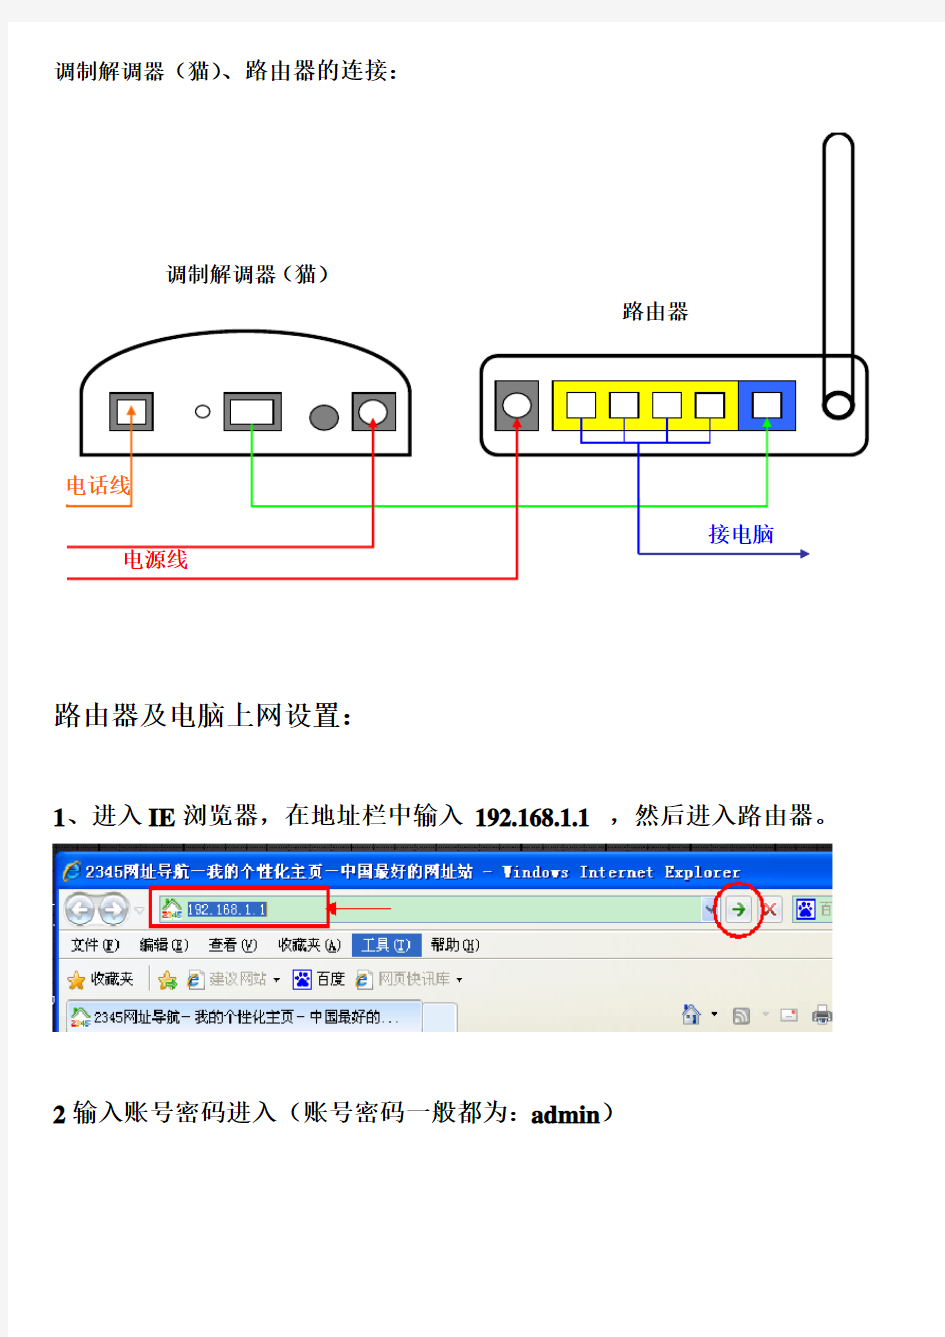 无线路由器上网设置及网络连接方法(详细图解)